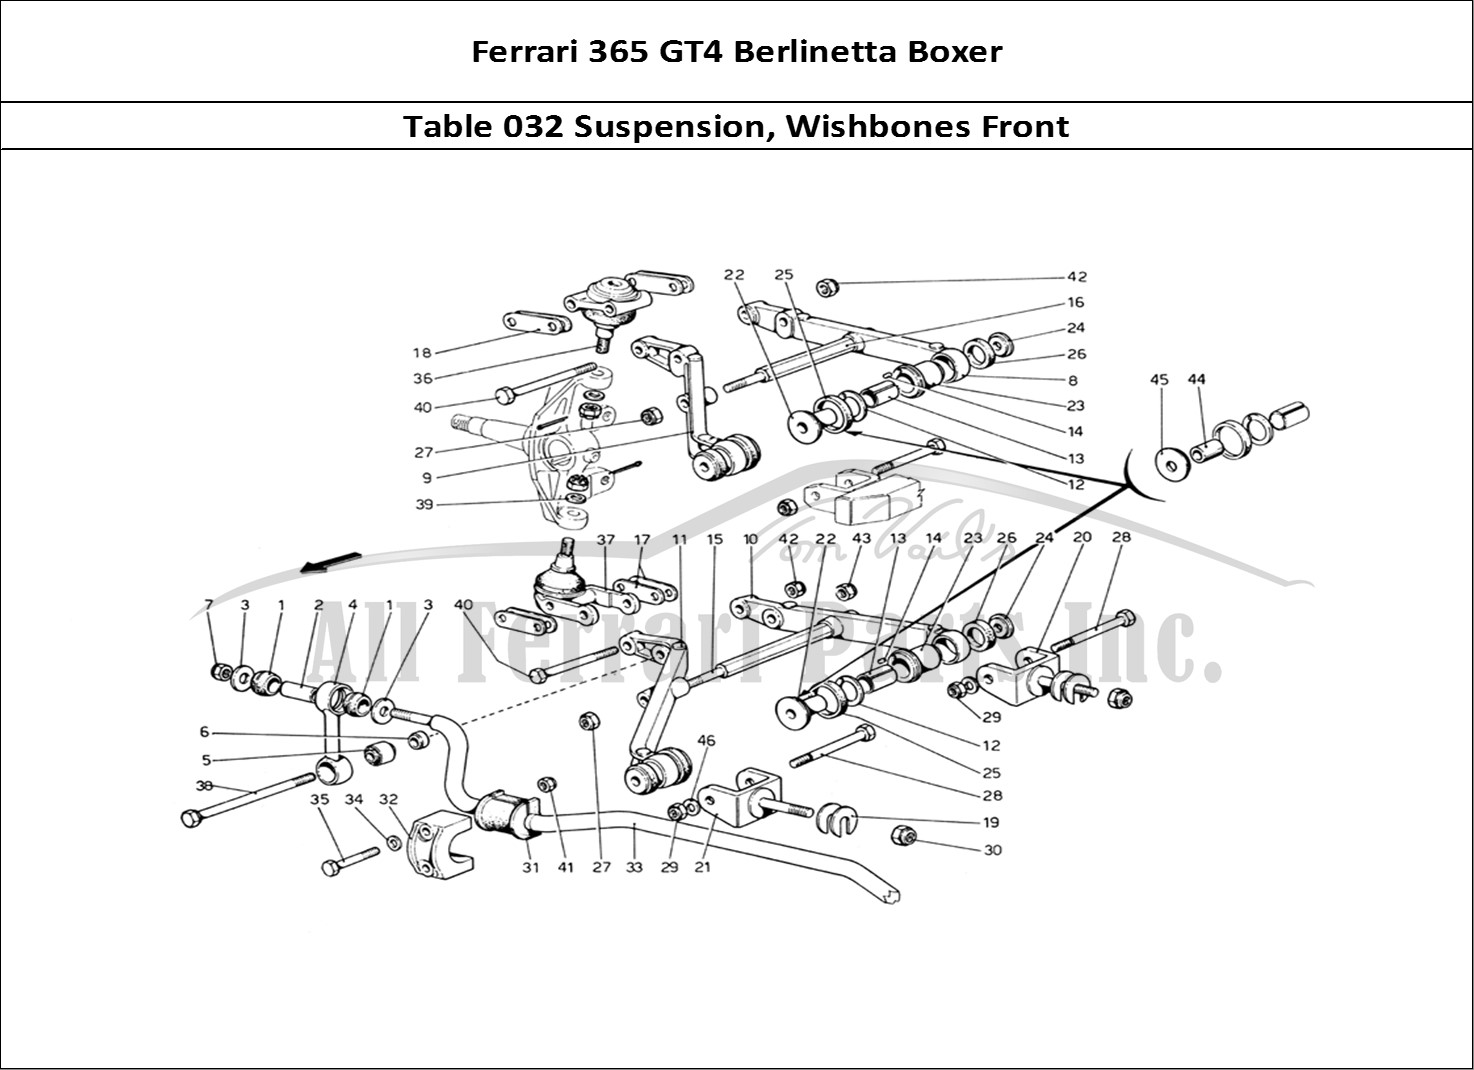 Ferrari Parts Ferrari 365 GT4 Berlinetta Boxer Page 032 Front Suspension - Wishbo